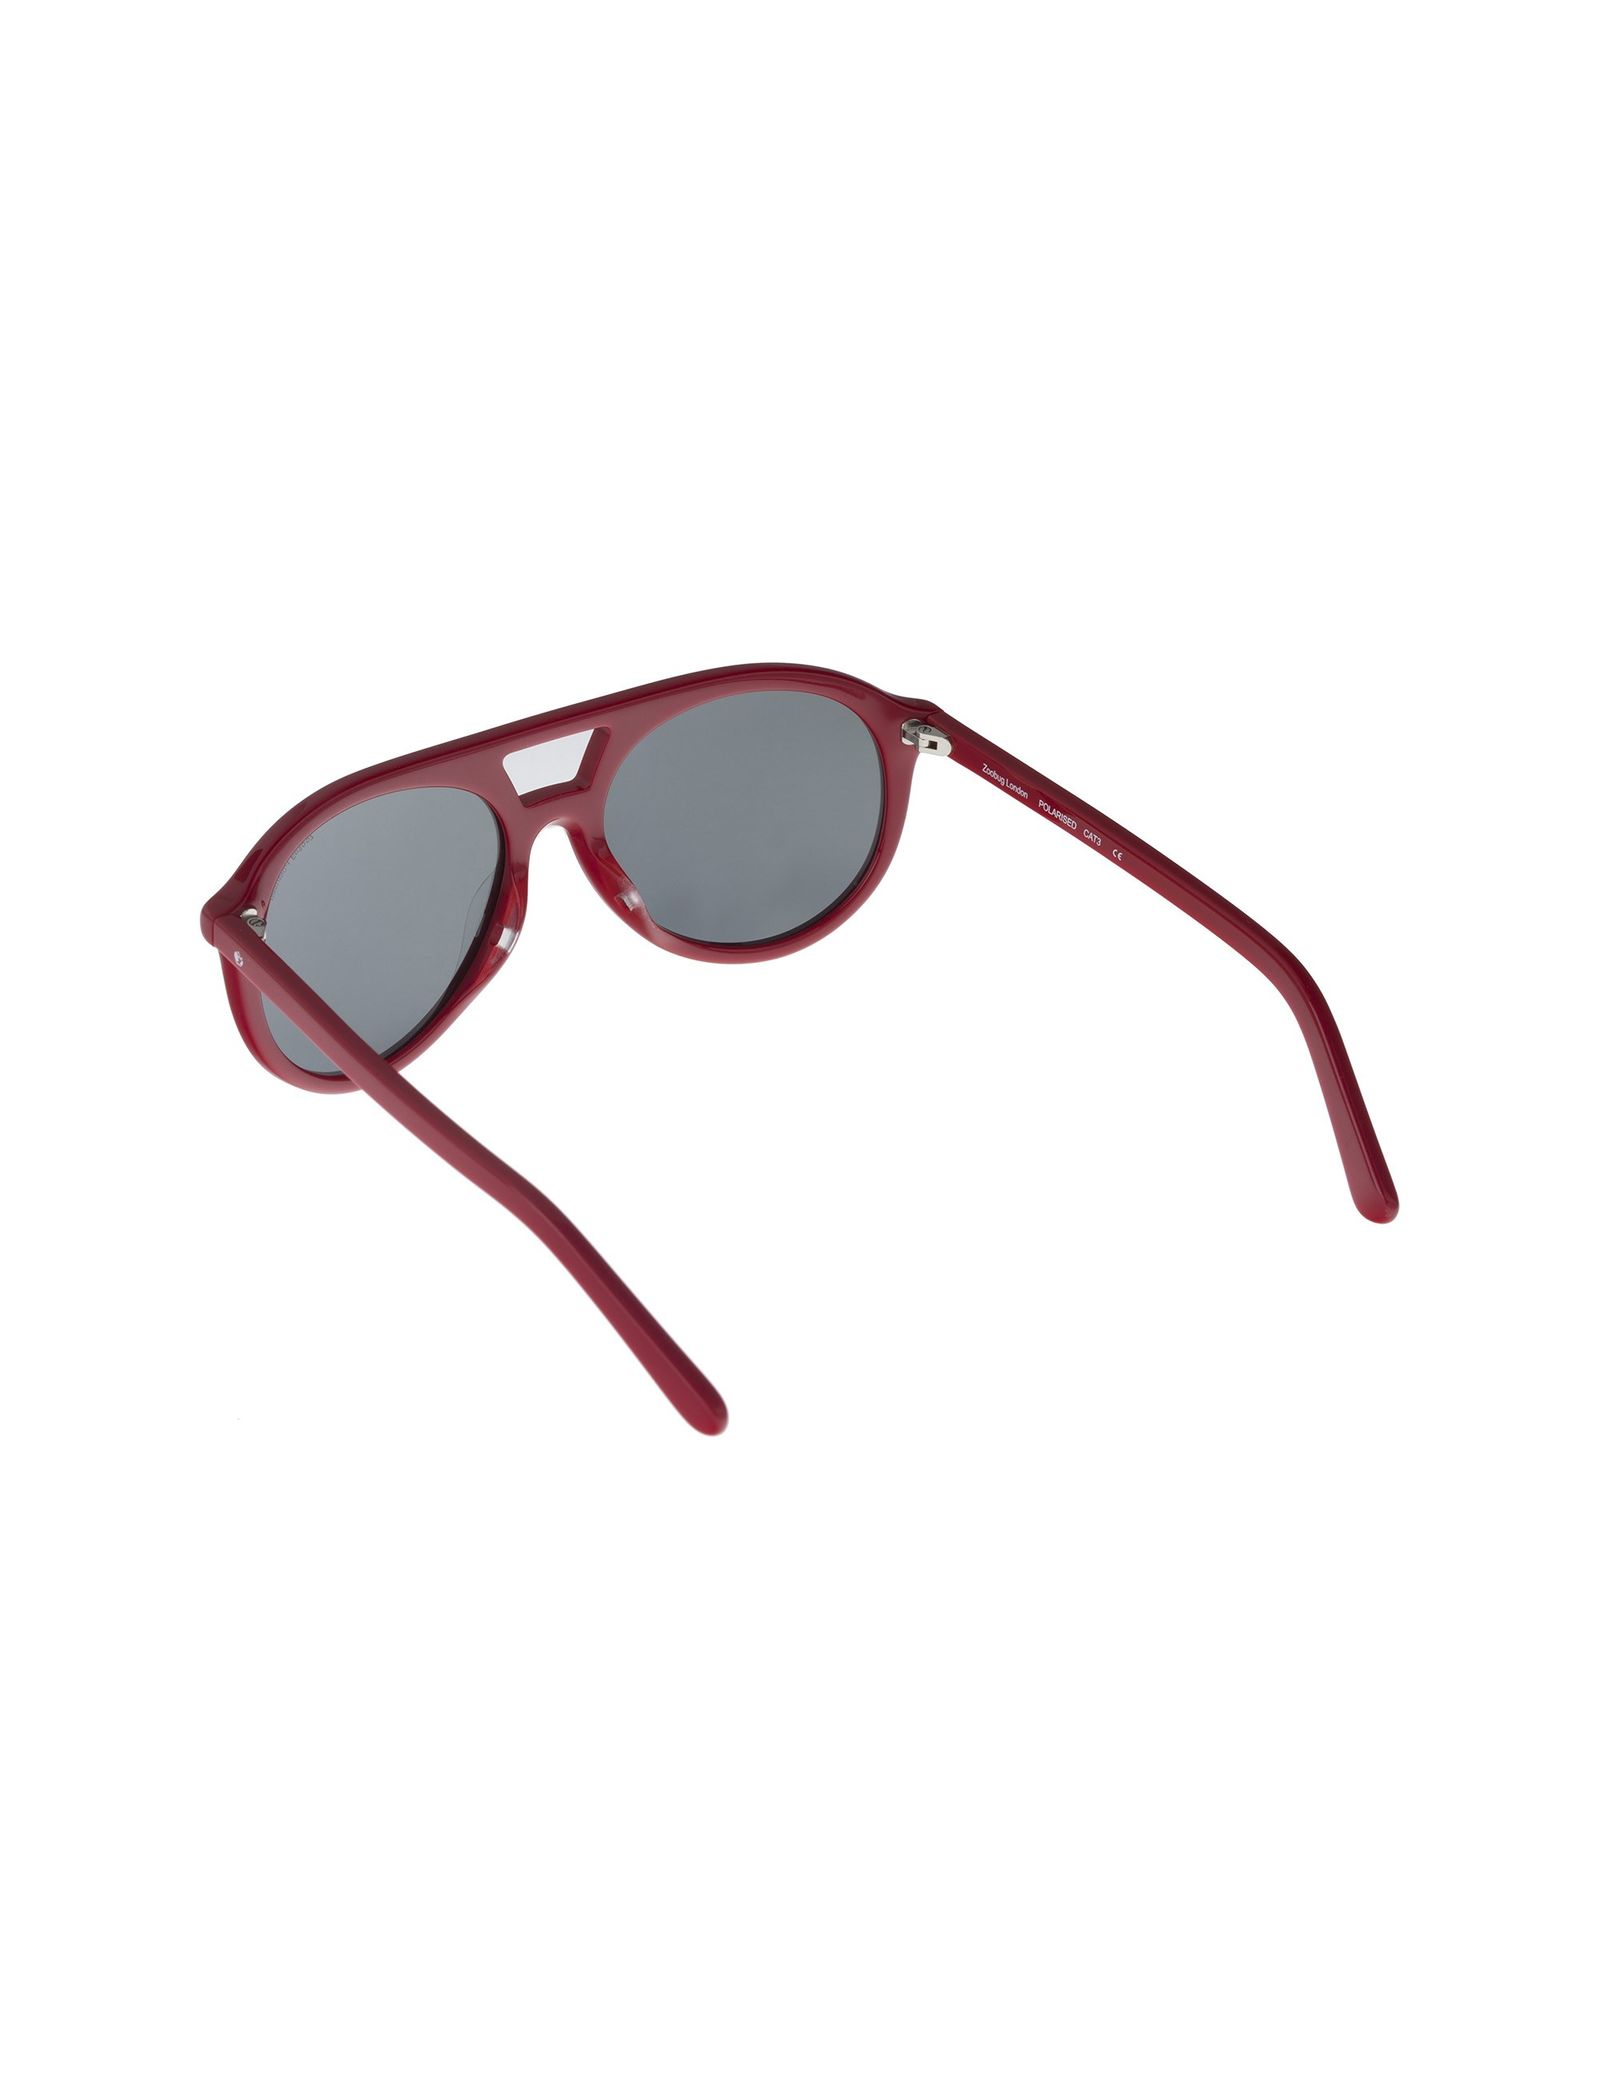 عینک آفتابی خلبانی پسرانه - زوباگ - قرمز - 5